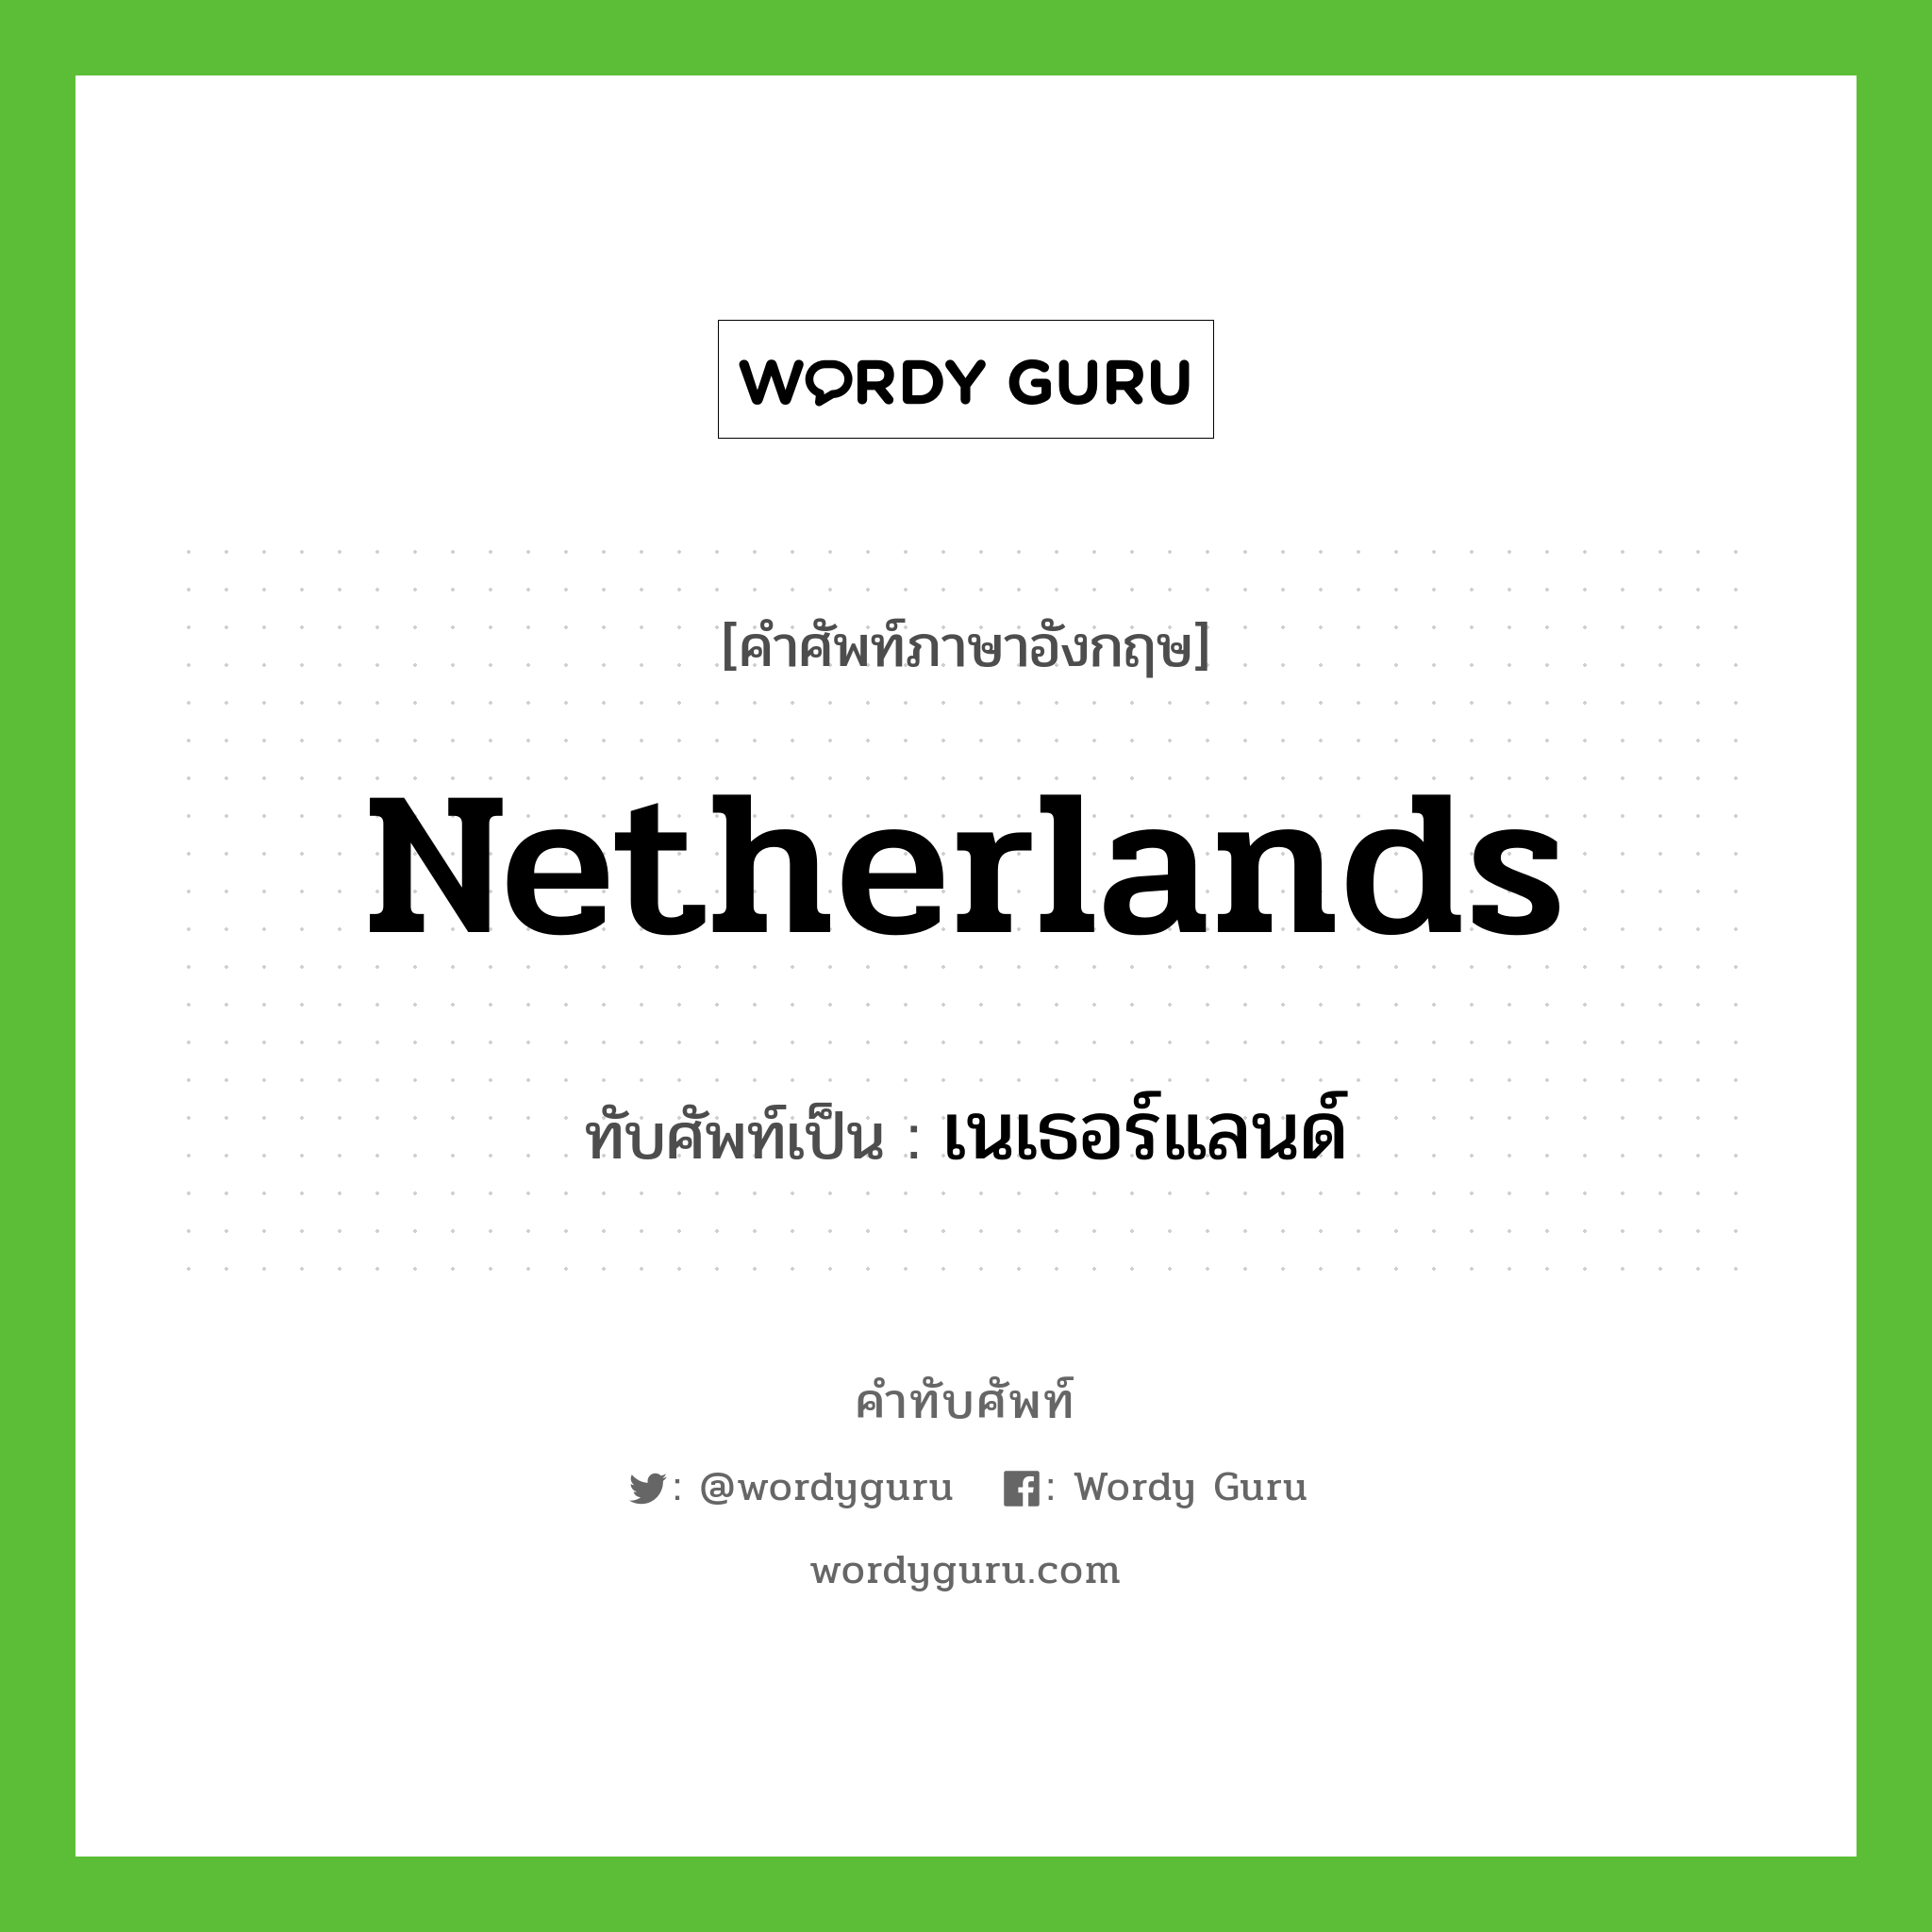 Netherlands เขียนเป็นคำไทยว่าอะไร?, คำศัพท์ภาษาอังกฤษ Netherlands ทับศัพท์เป็น เนเธอร์แลนด์